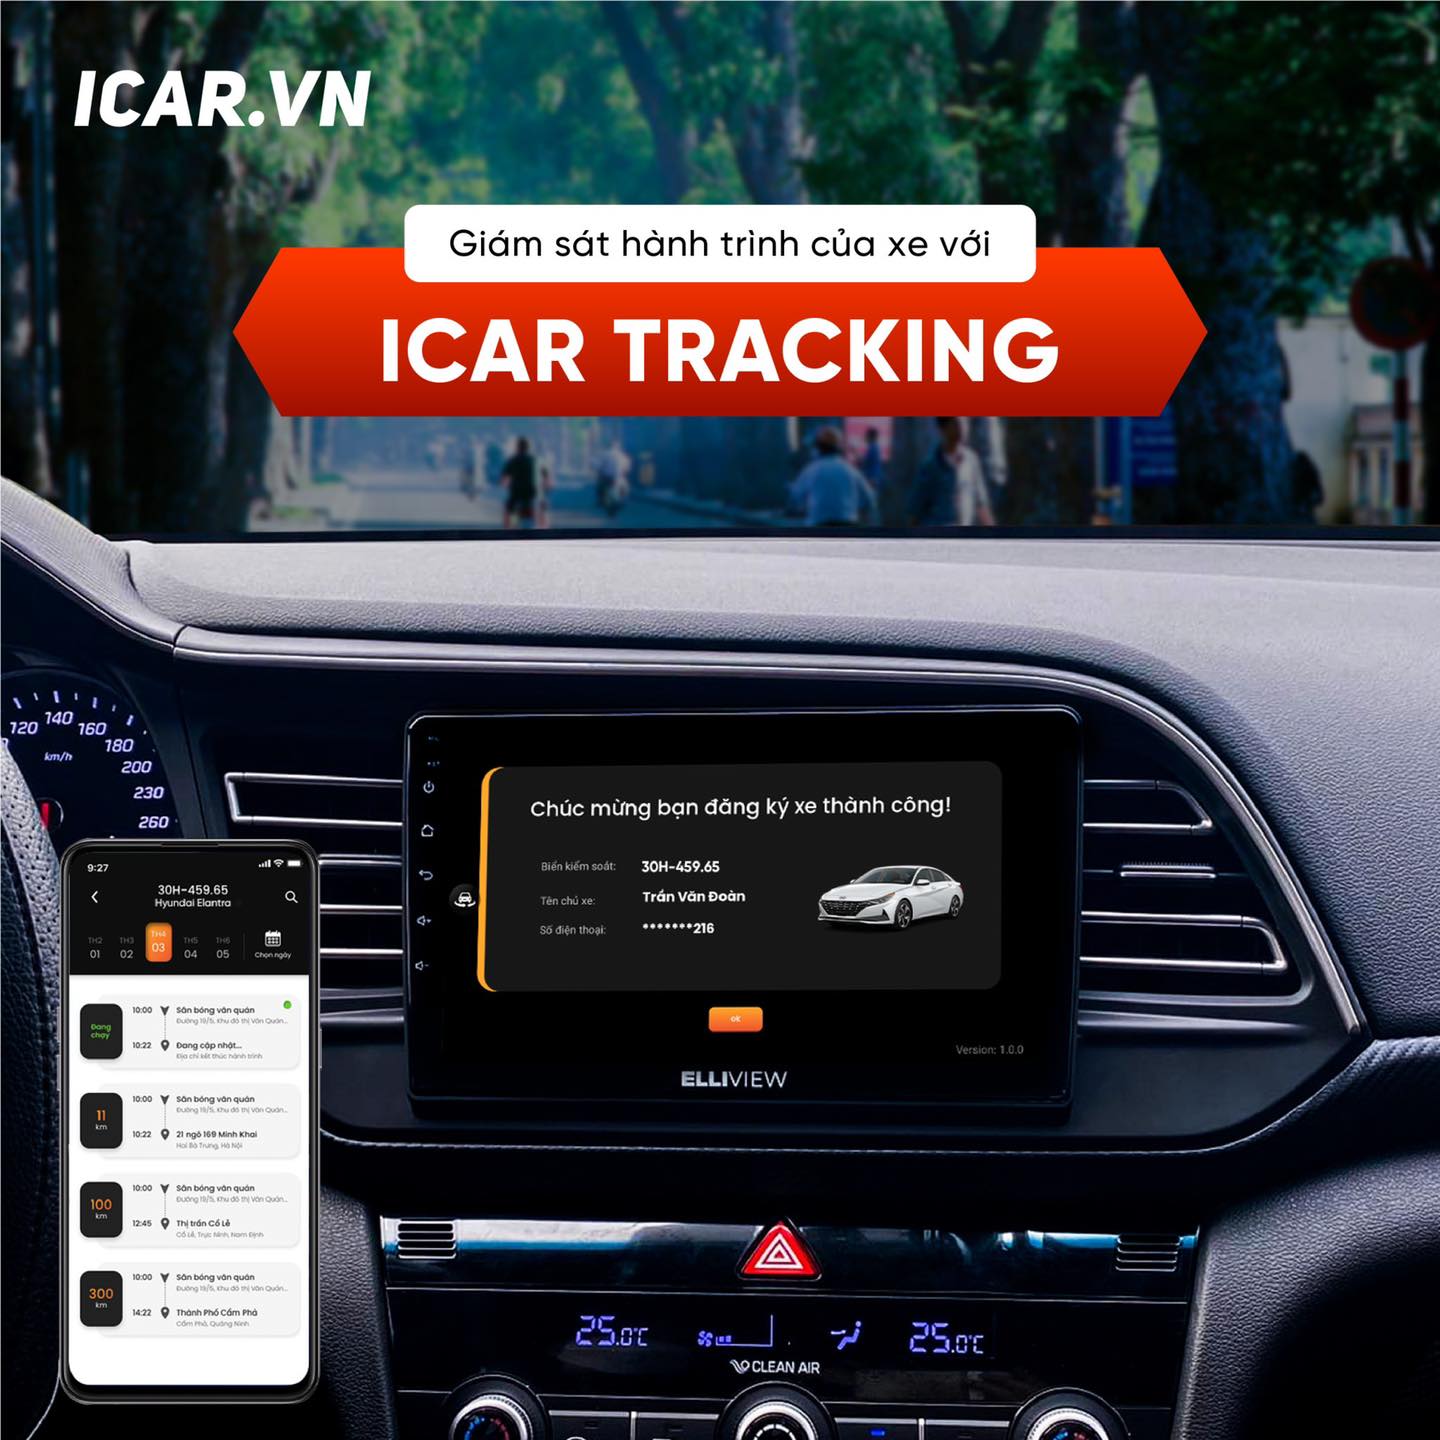 ICAR Tracking – Phần mềm định vị xe chính xác nhất hiện nay